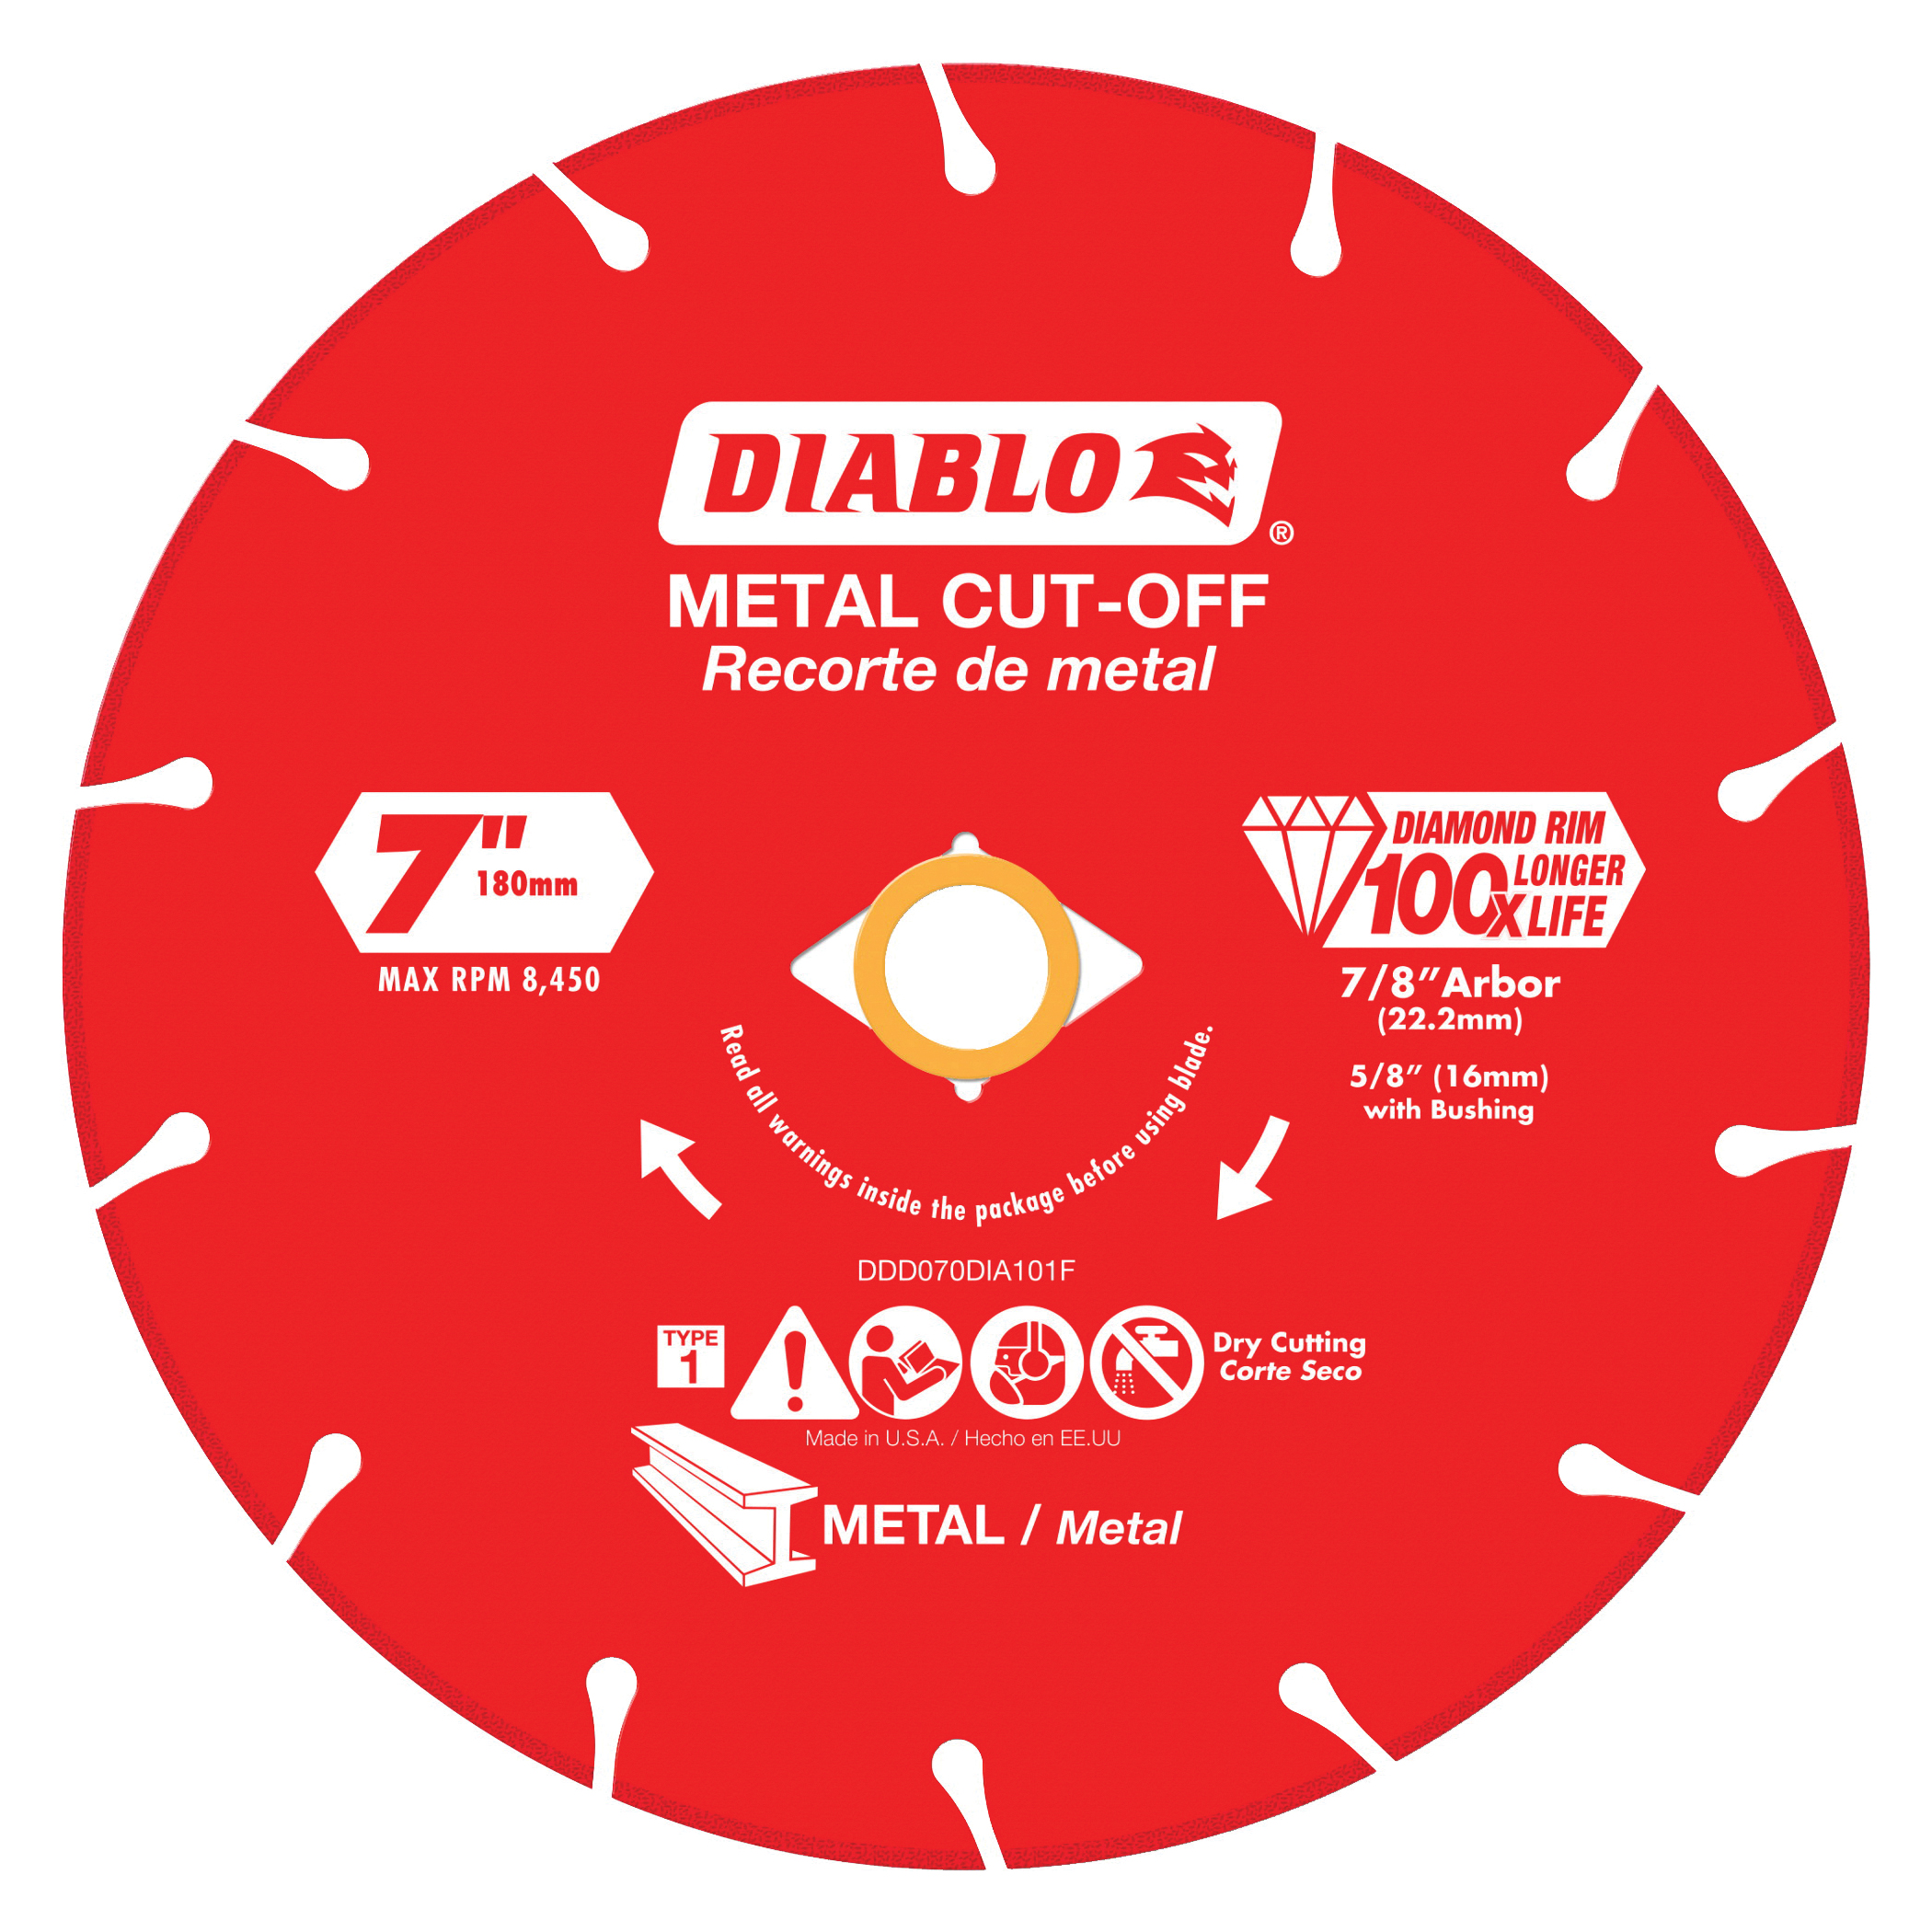 Diablo DDD070DIA101F